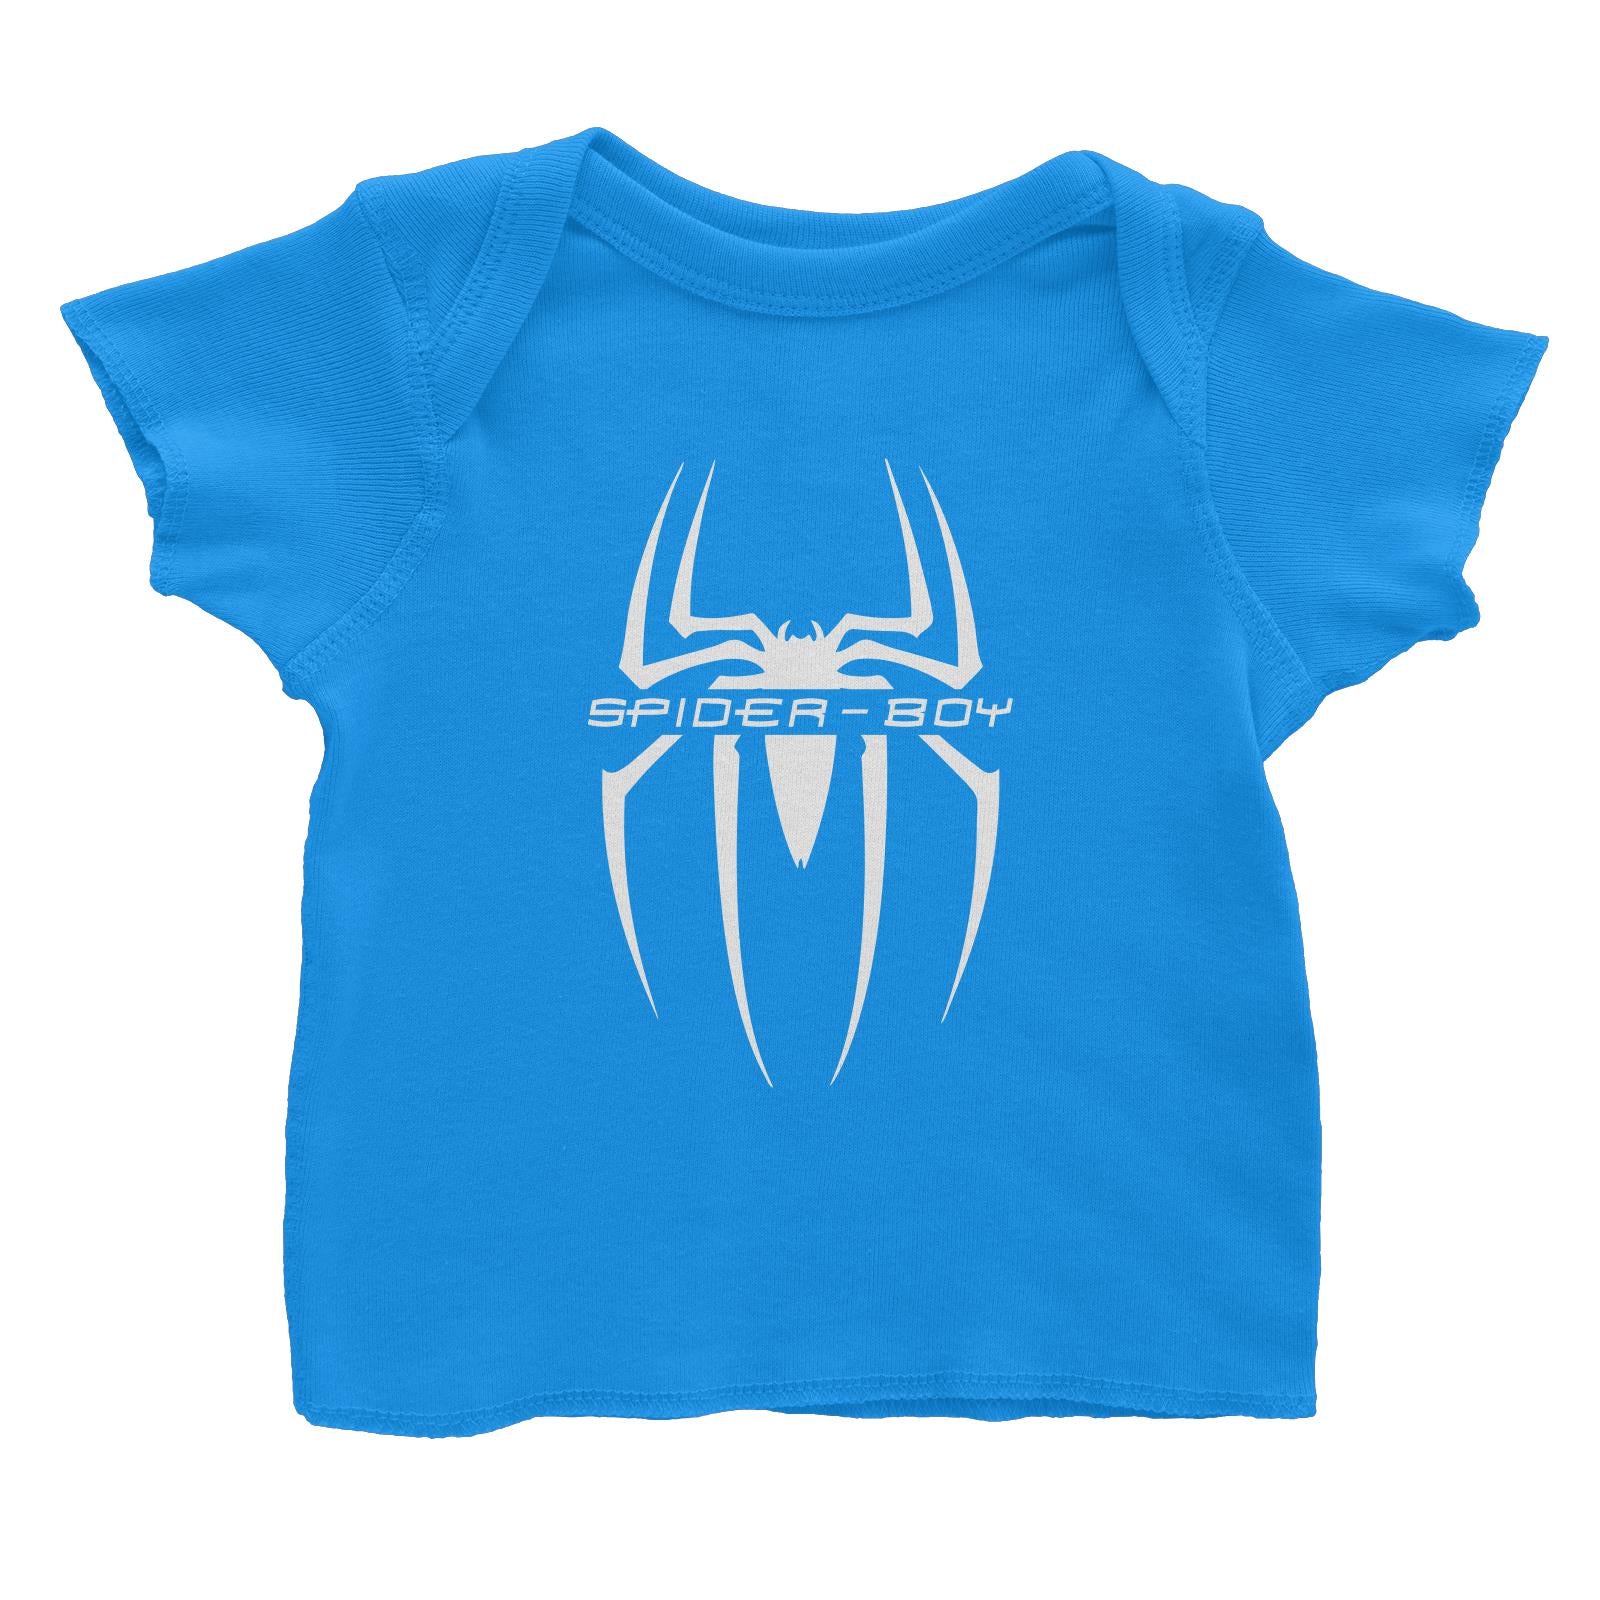 Superhero Spider Boy Baby T-Shirt  Matching Family